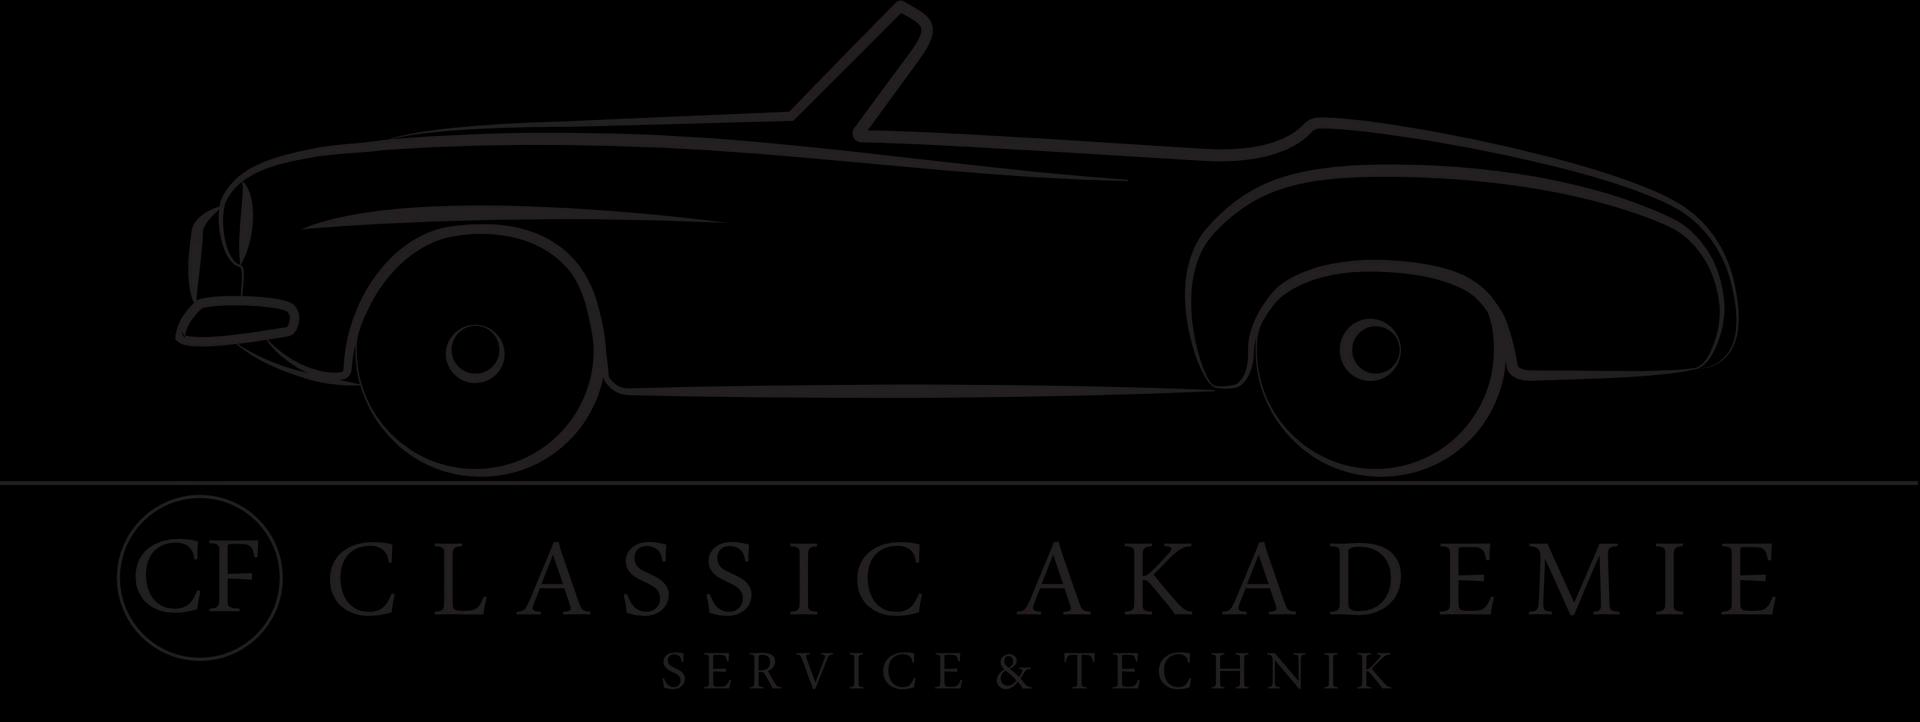 Classic_Akademie_Logo_weiss_schwarz_0cd17bd3f6